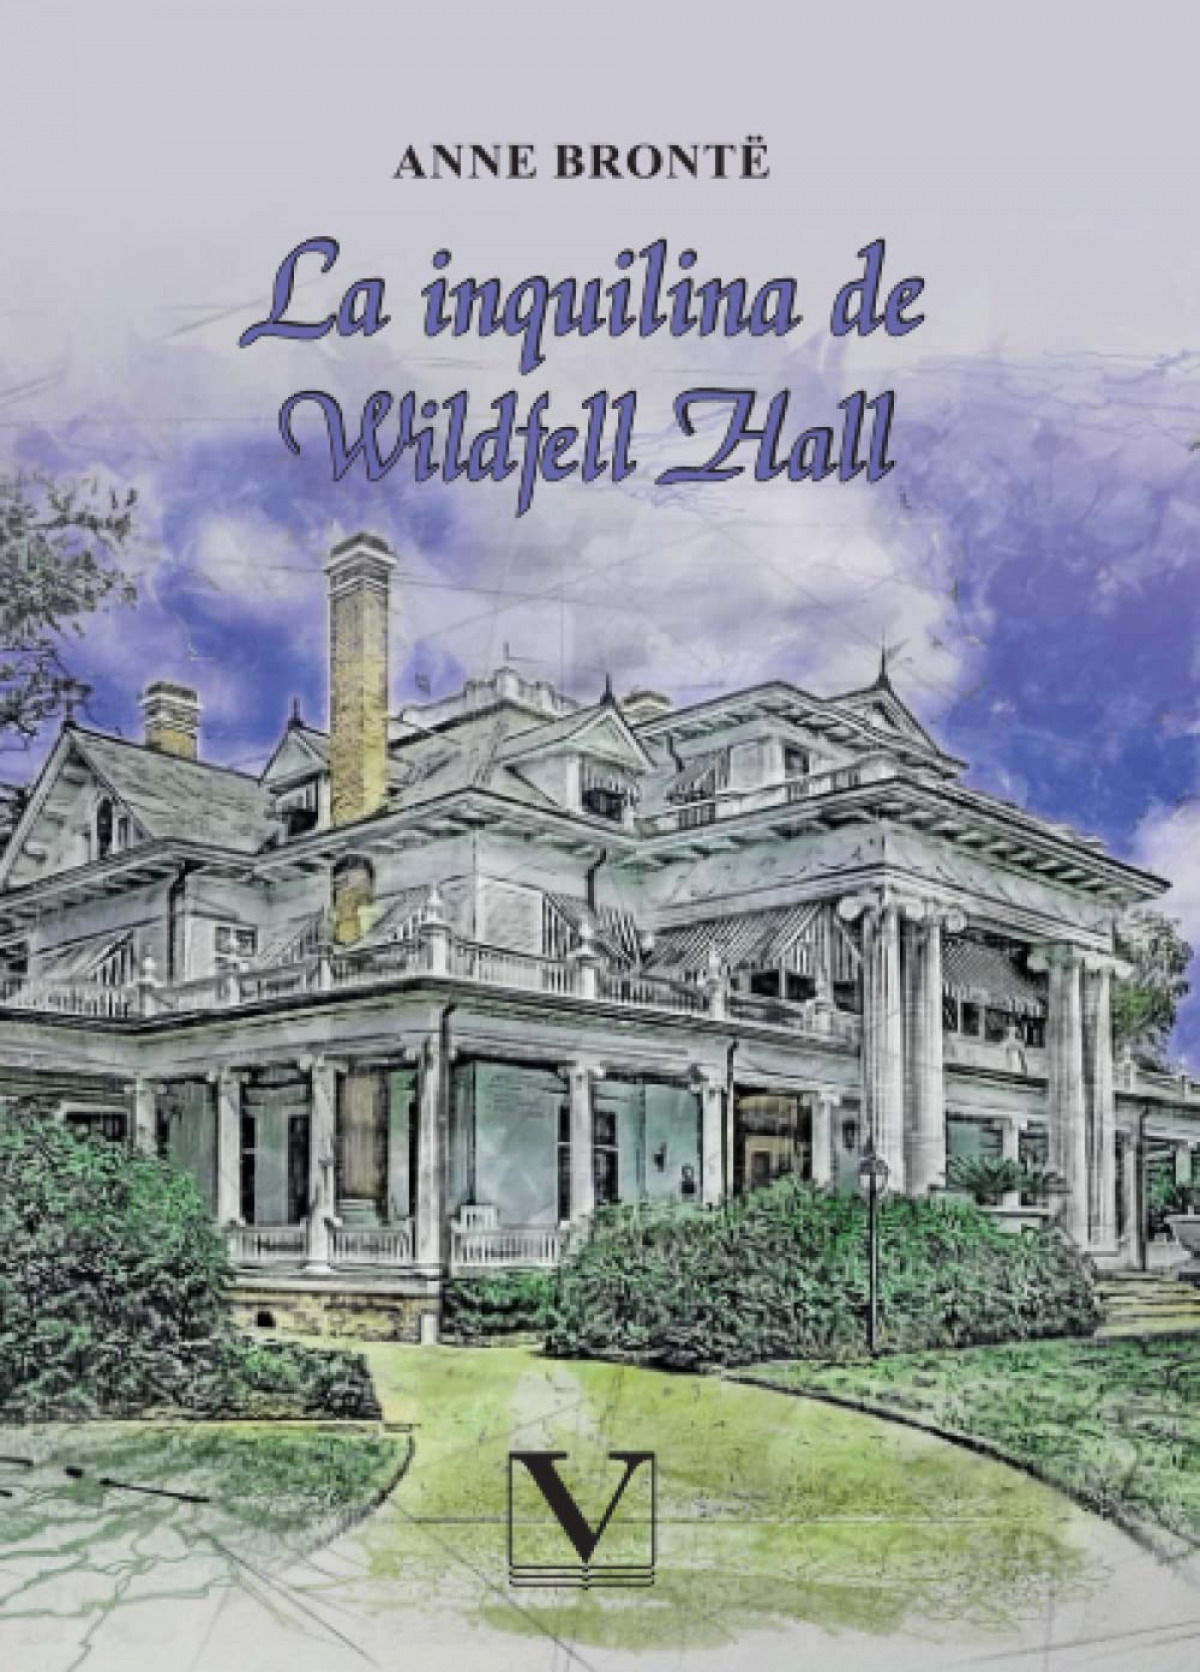 La inquilina de wildfell hall - Anne Bronte